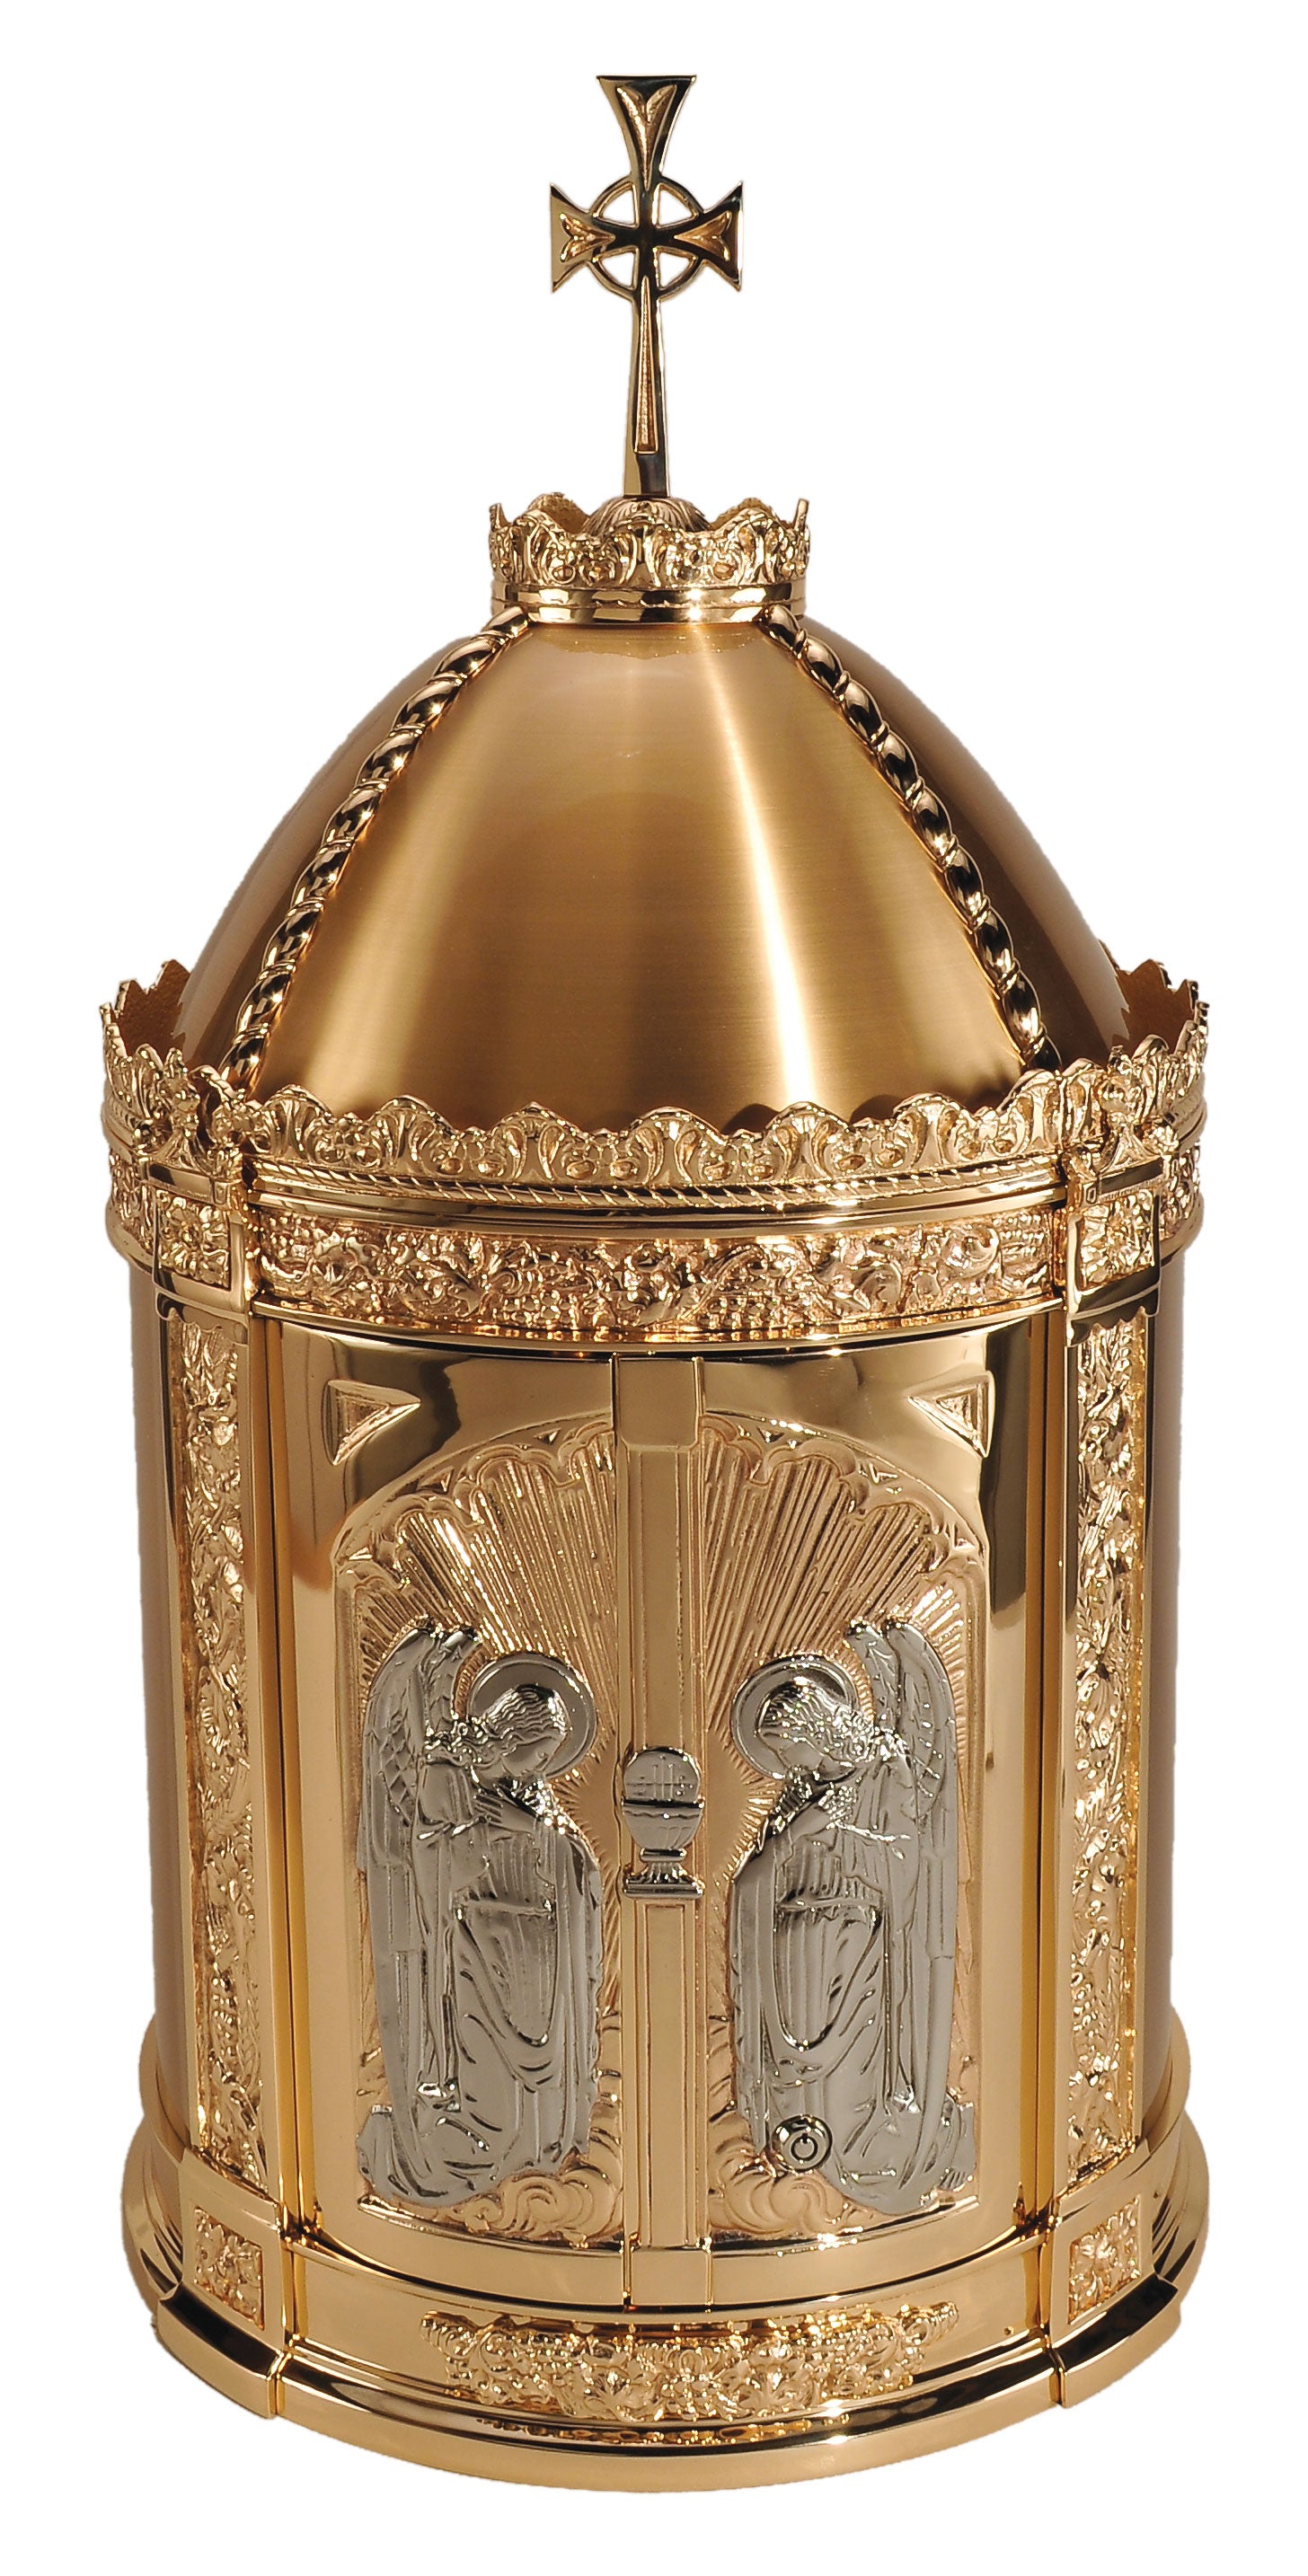 bronze-tabernacle-adoring-angels-61tab30.jpg